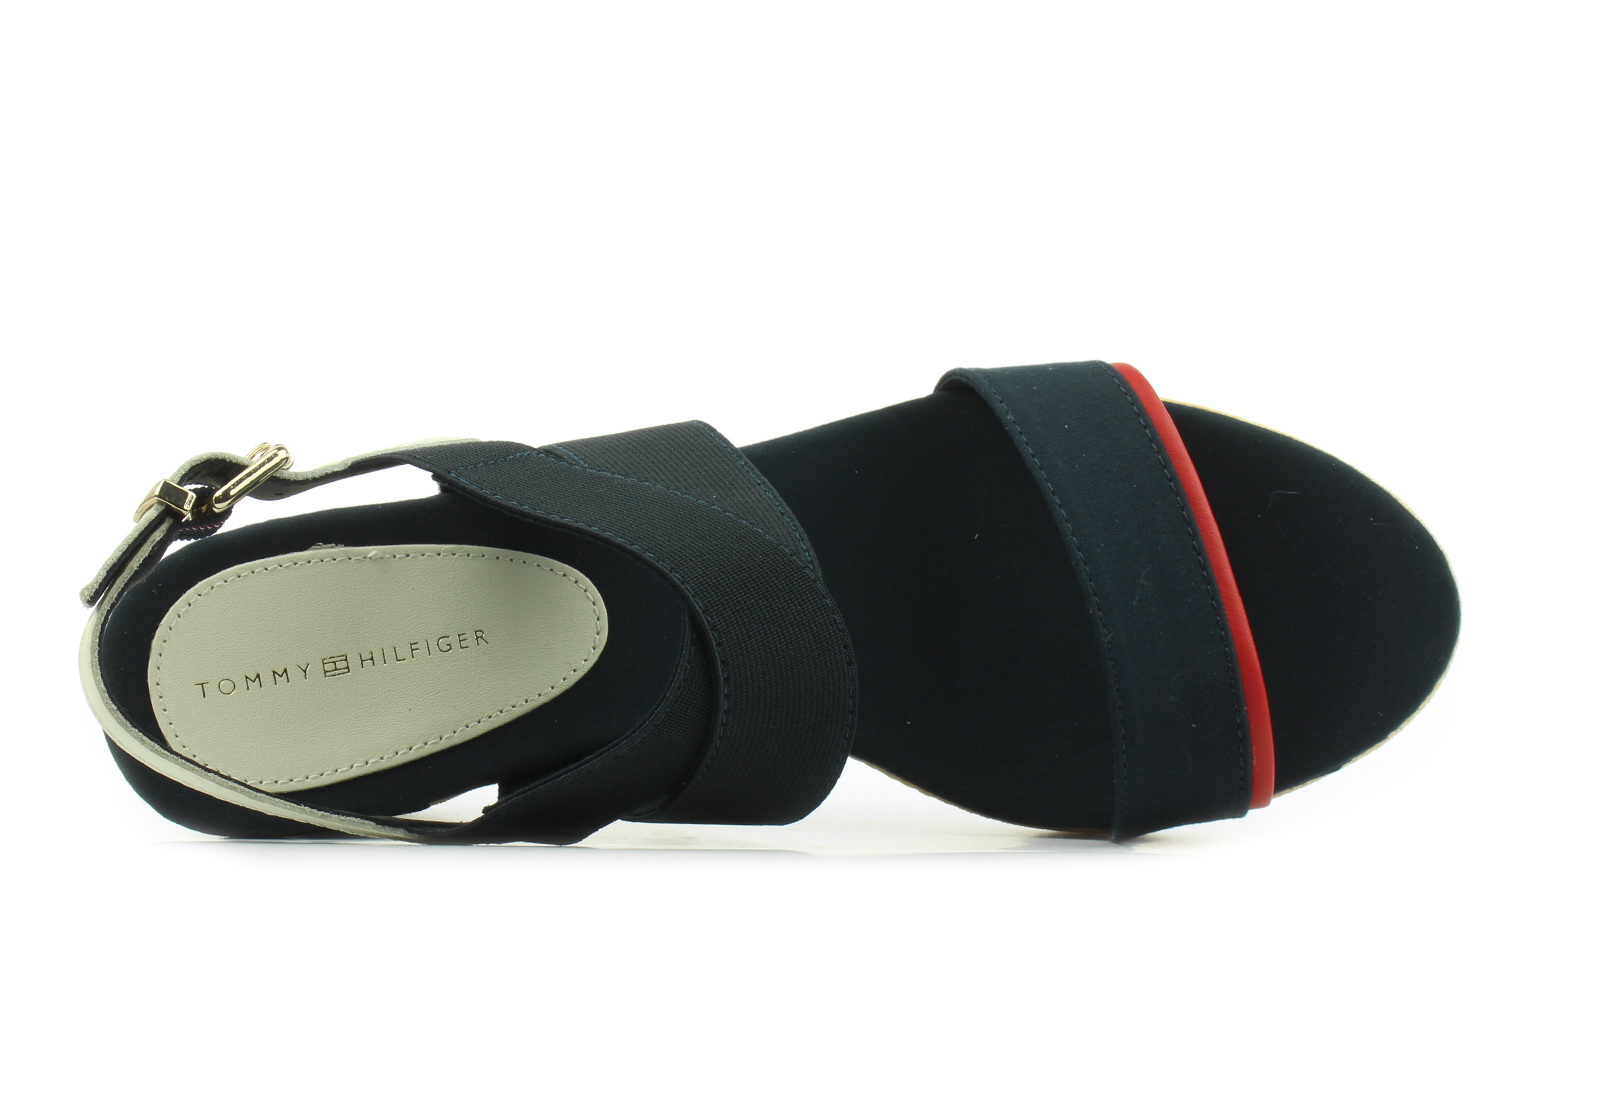 Tommy Hilfiger Sandals Estella 4d1 - FW0-4945-DW5 - Online shop for shoes boots